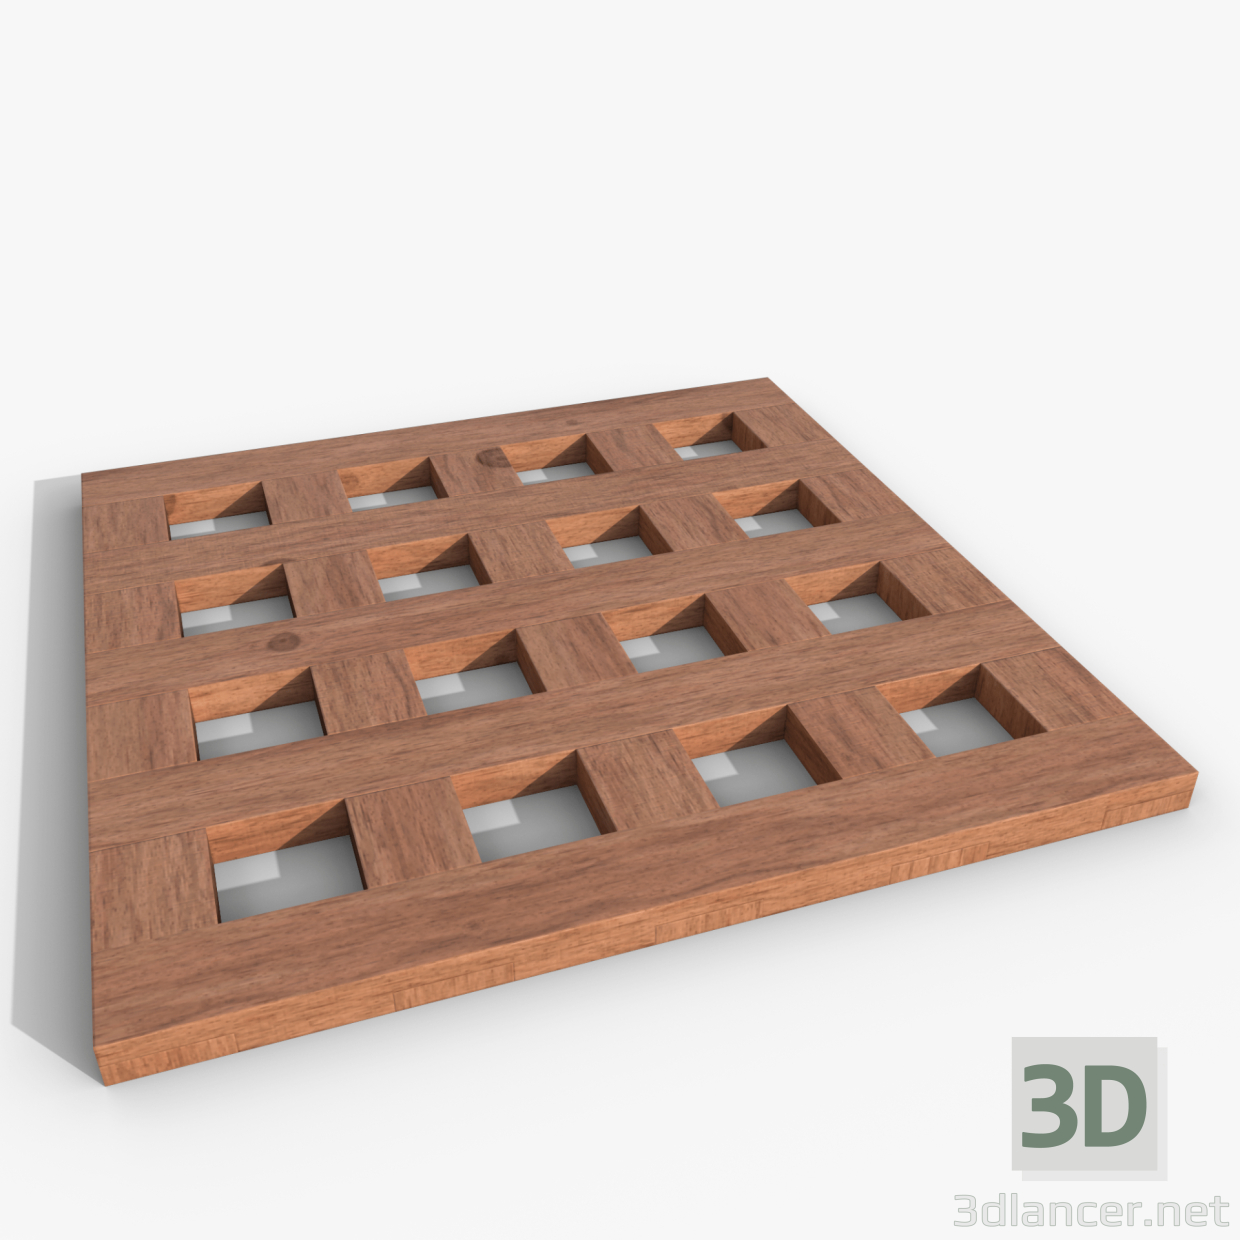 3D Sıcak Nordbi 18x18 için stand modeli satın - render